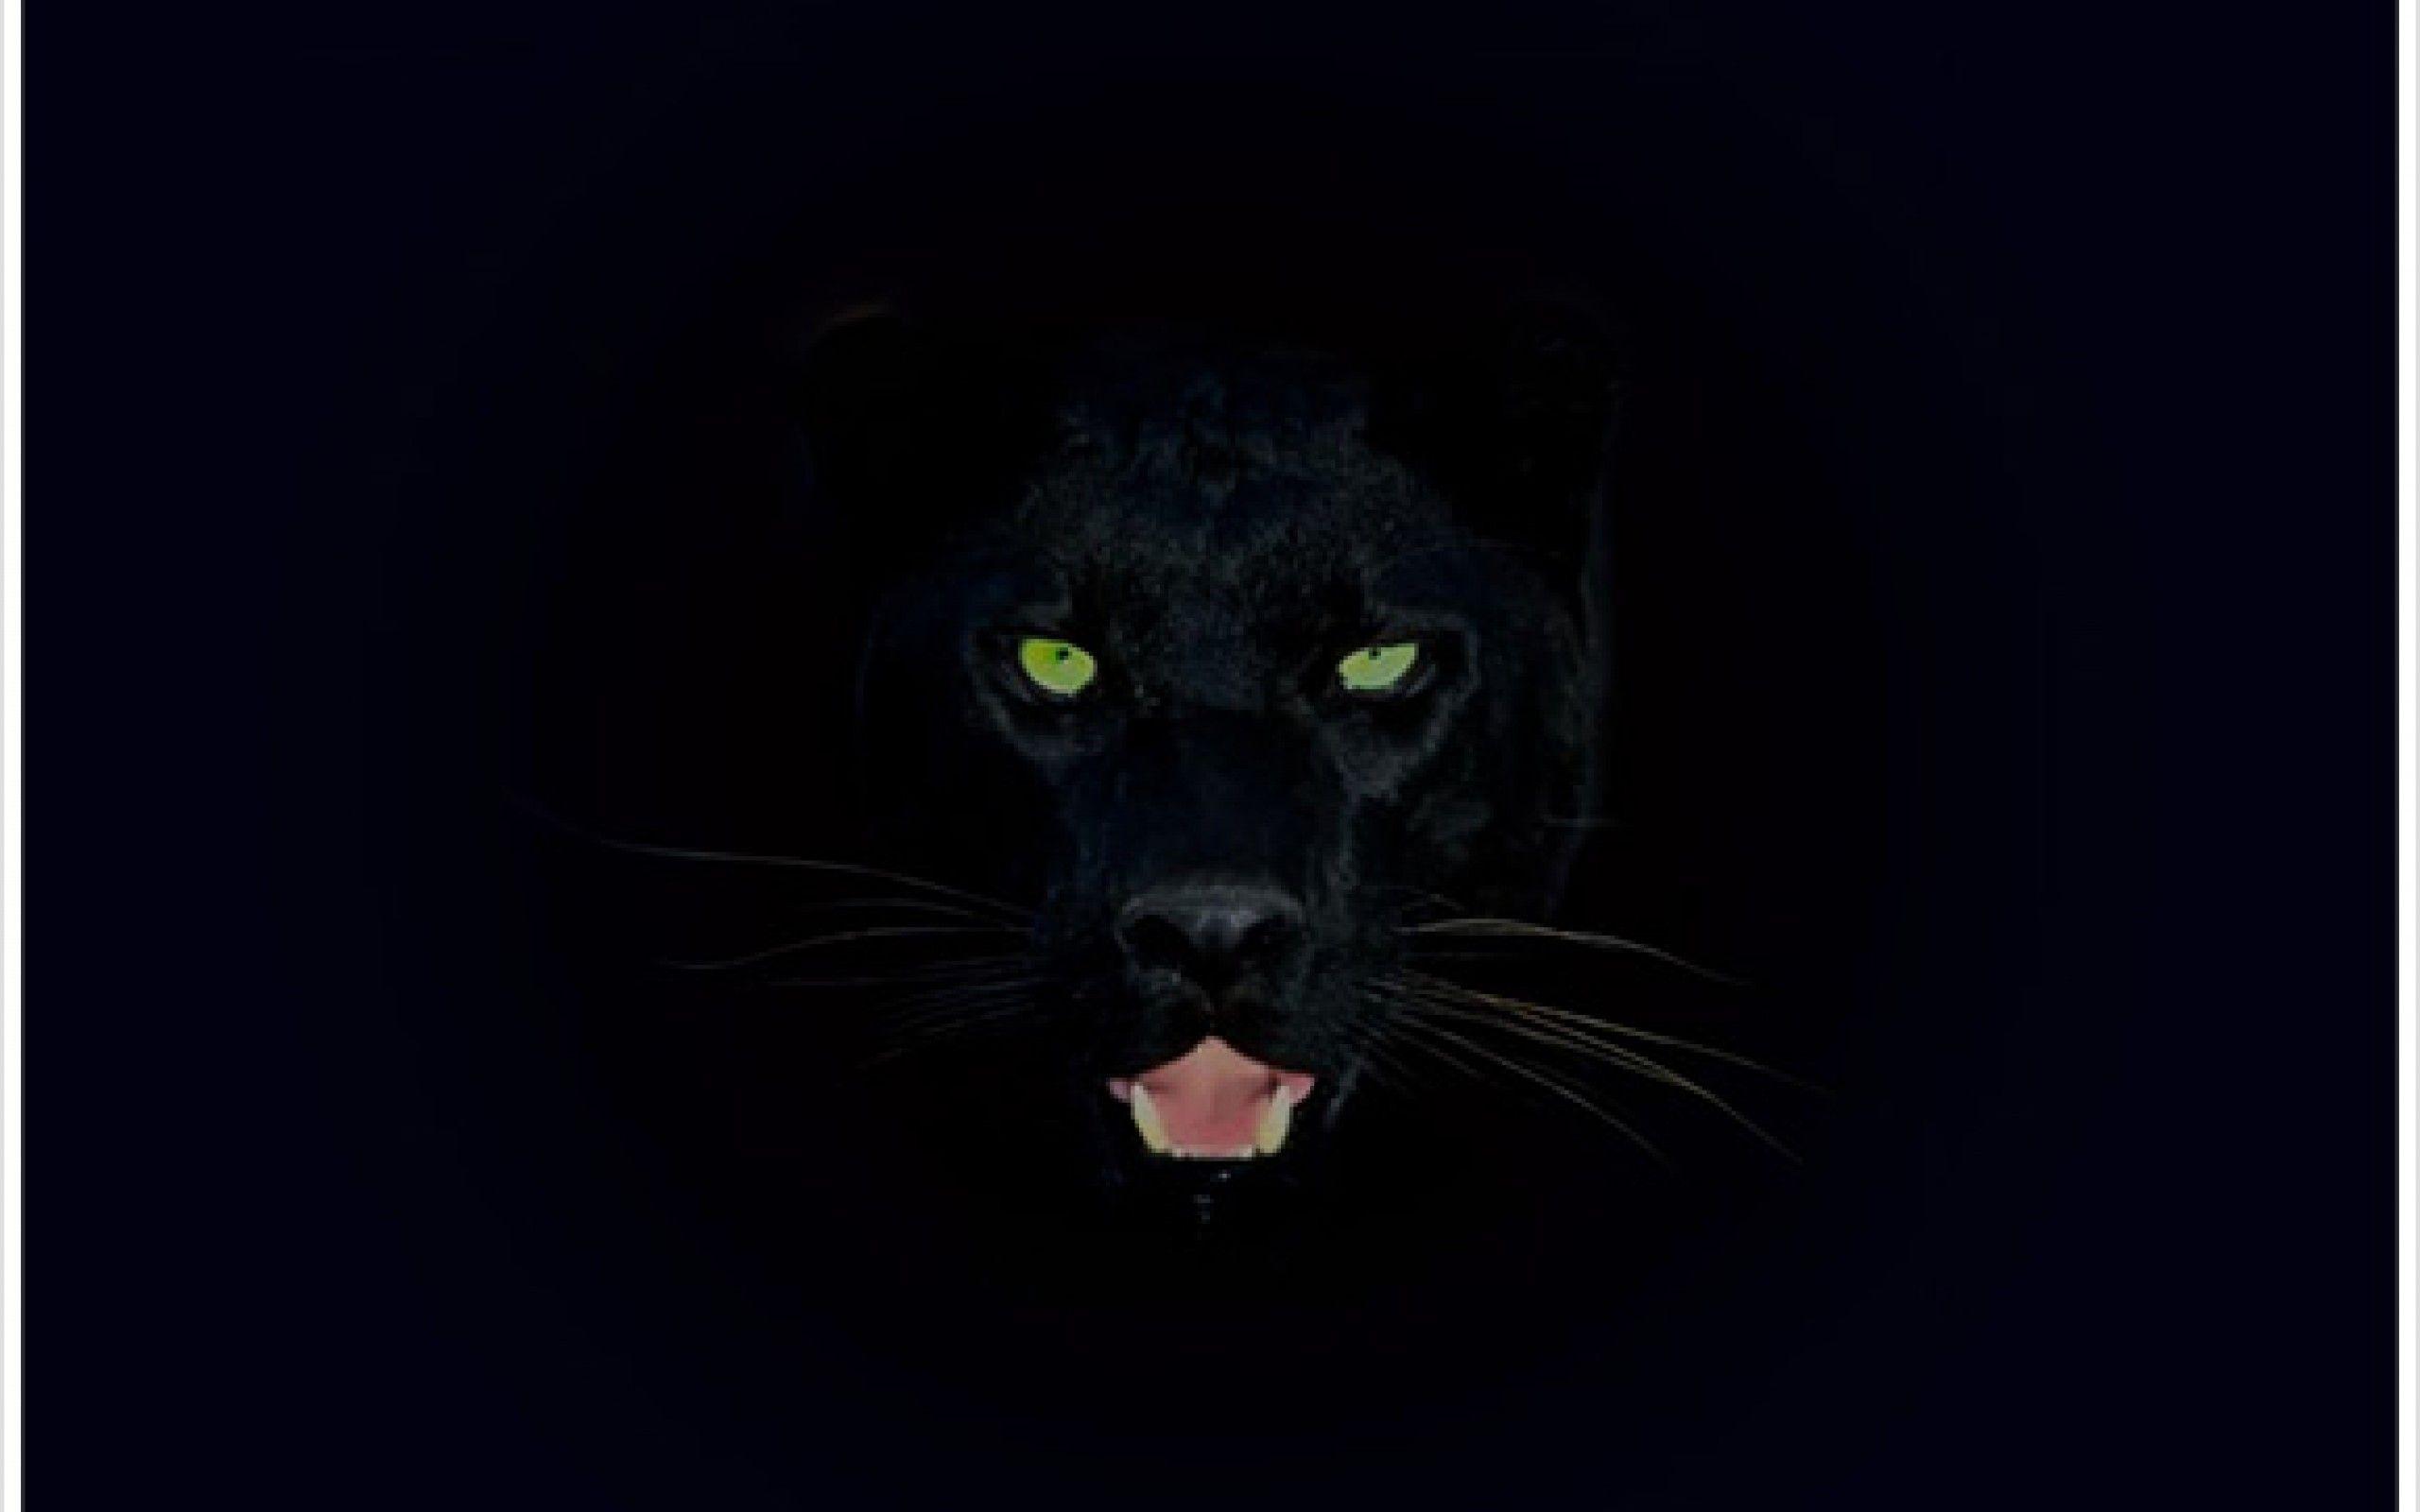 Black Panther Animal Wallpapers - Top Free Black Panther Animal Backgrounds  - WallpaperAccess